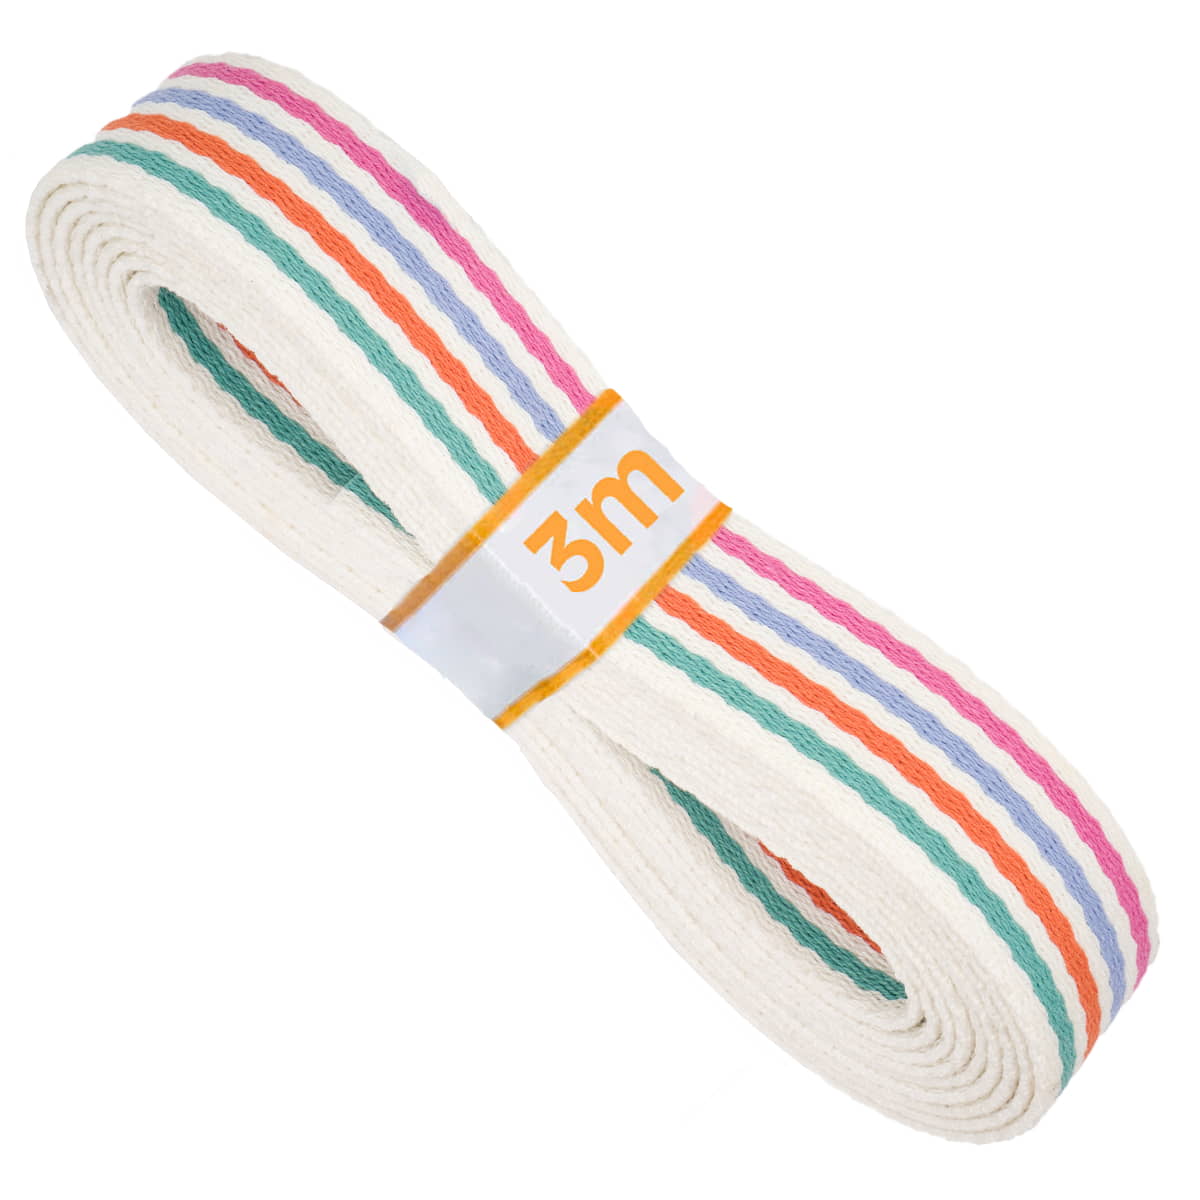 Tassenband | katoen | 30 mm | gestreept - groen oranje blauw roze Tassenband TASB-KATOEN-GR-OR-BL-RZ-3M